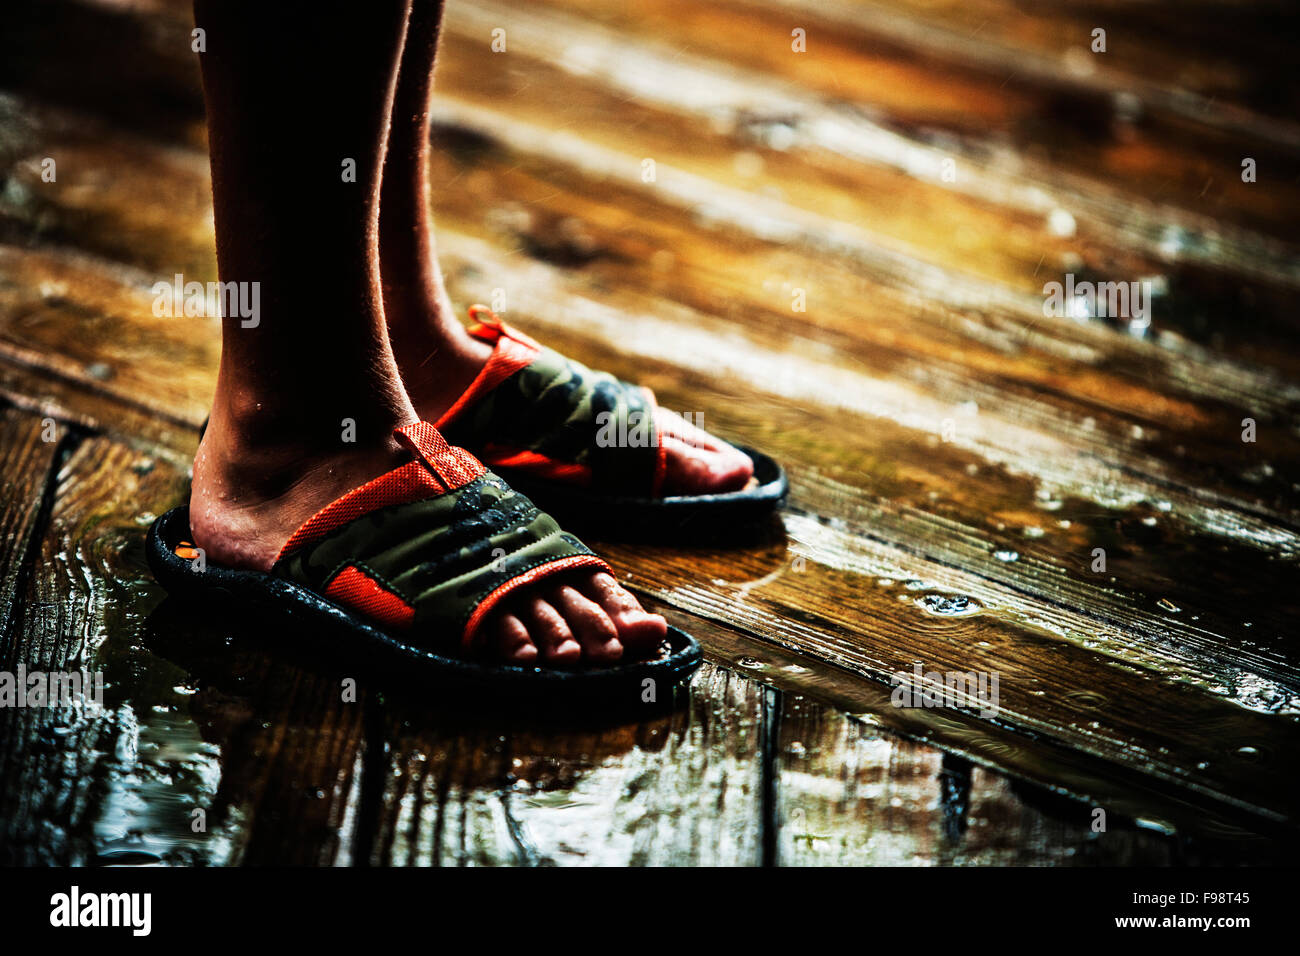 Einem jungen nasse Füße in Sandalen Stockfotografie - Alamy